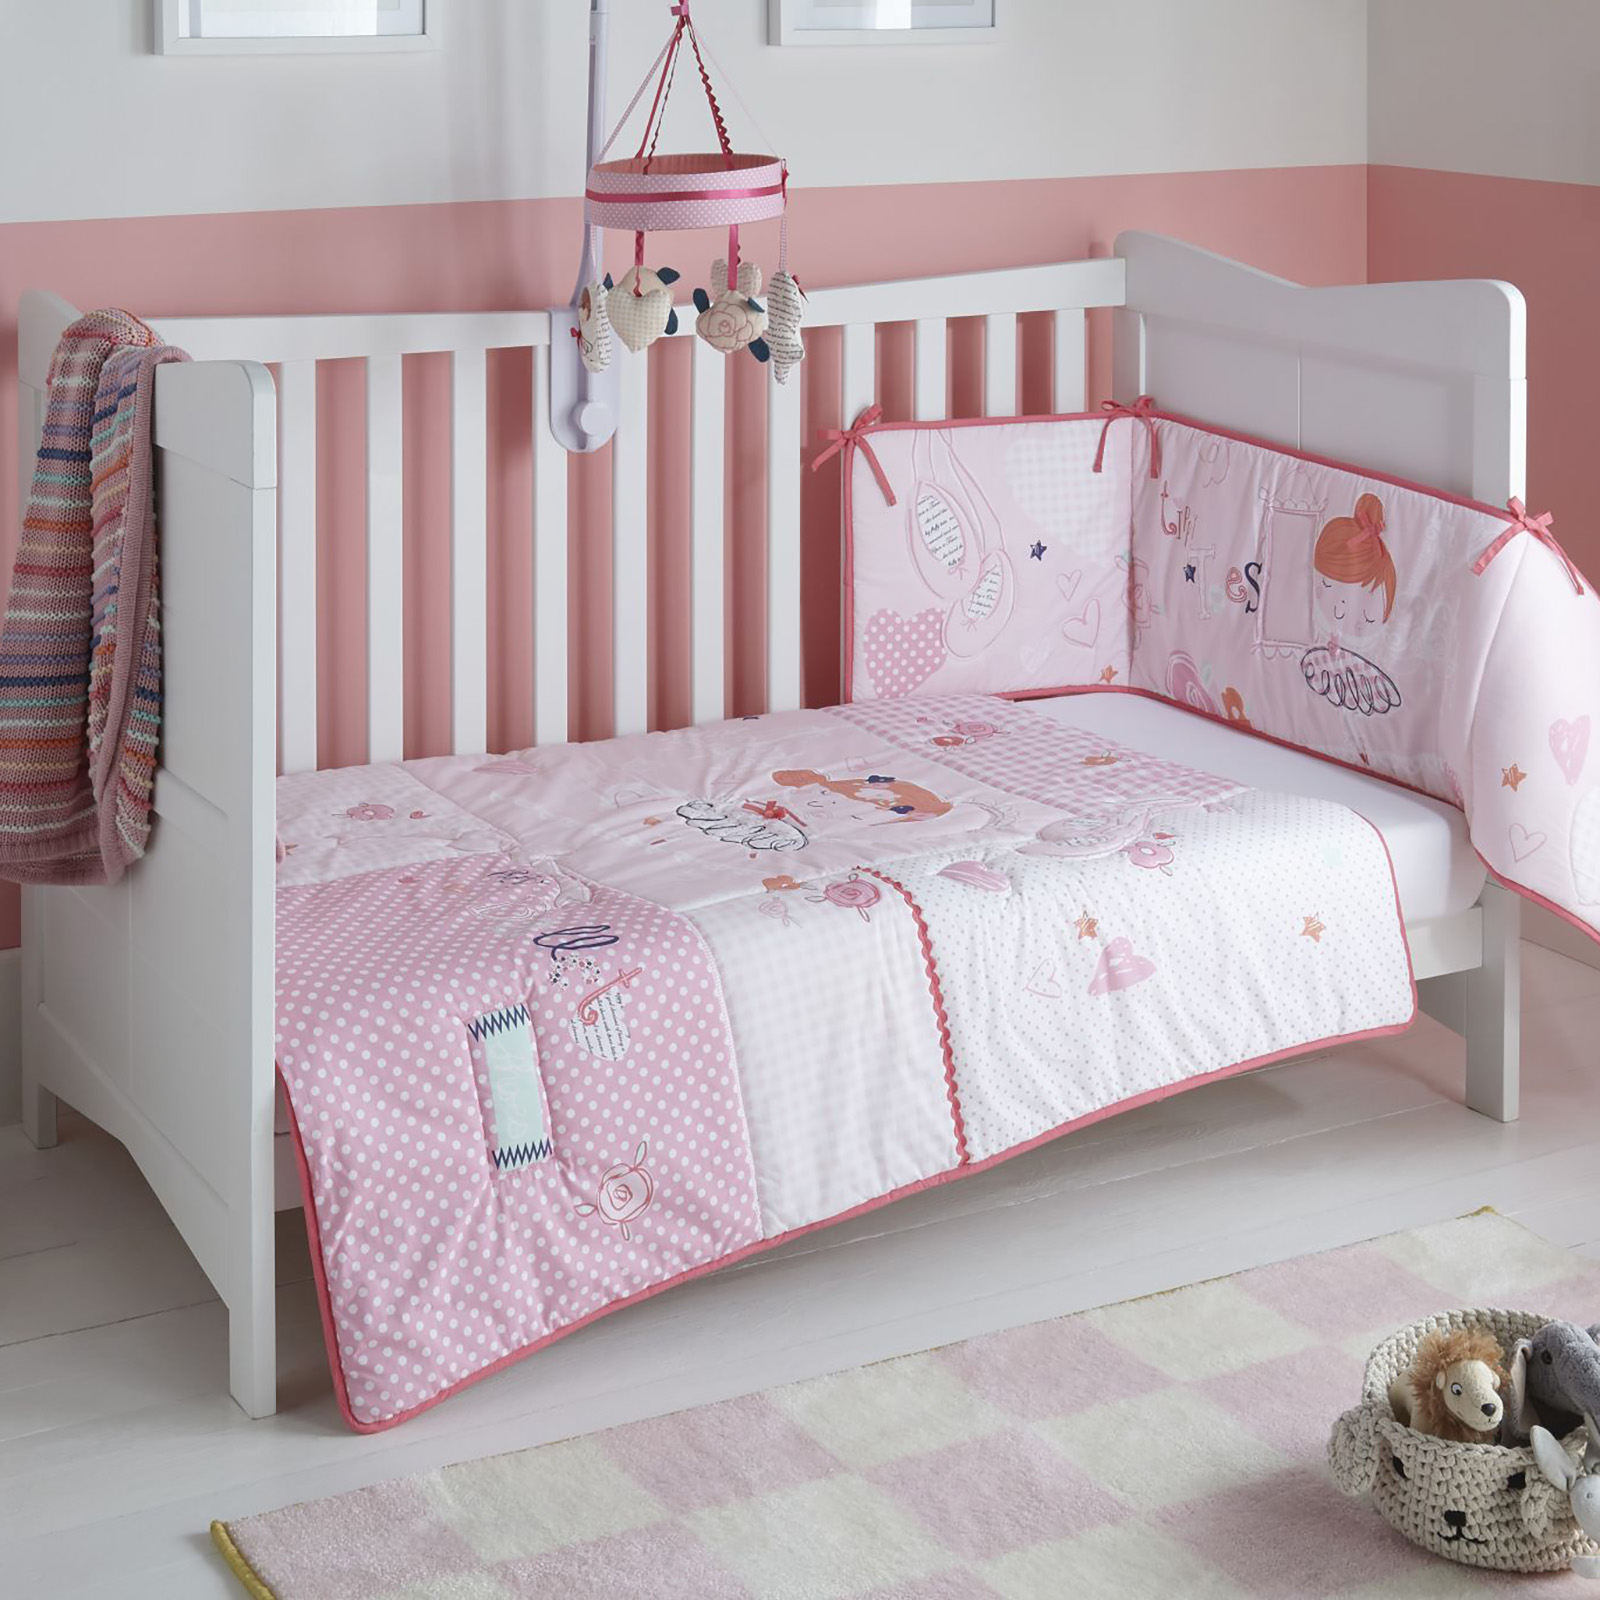 pink cot bed duvet set